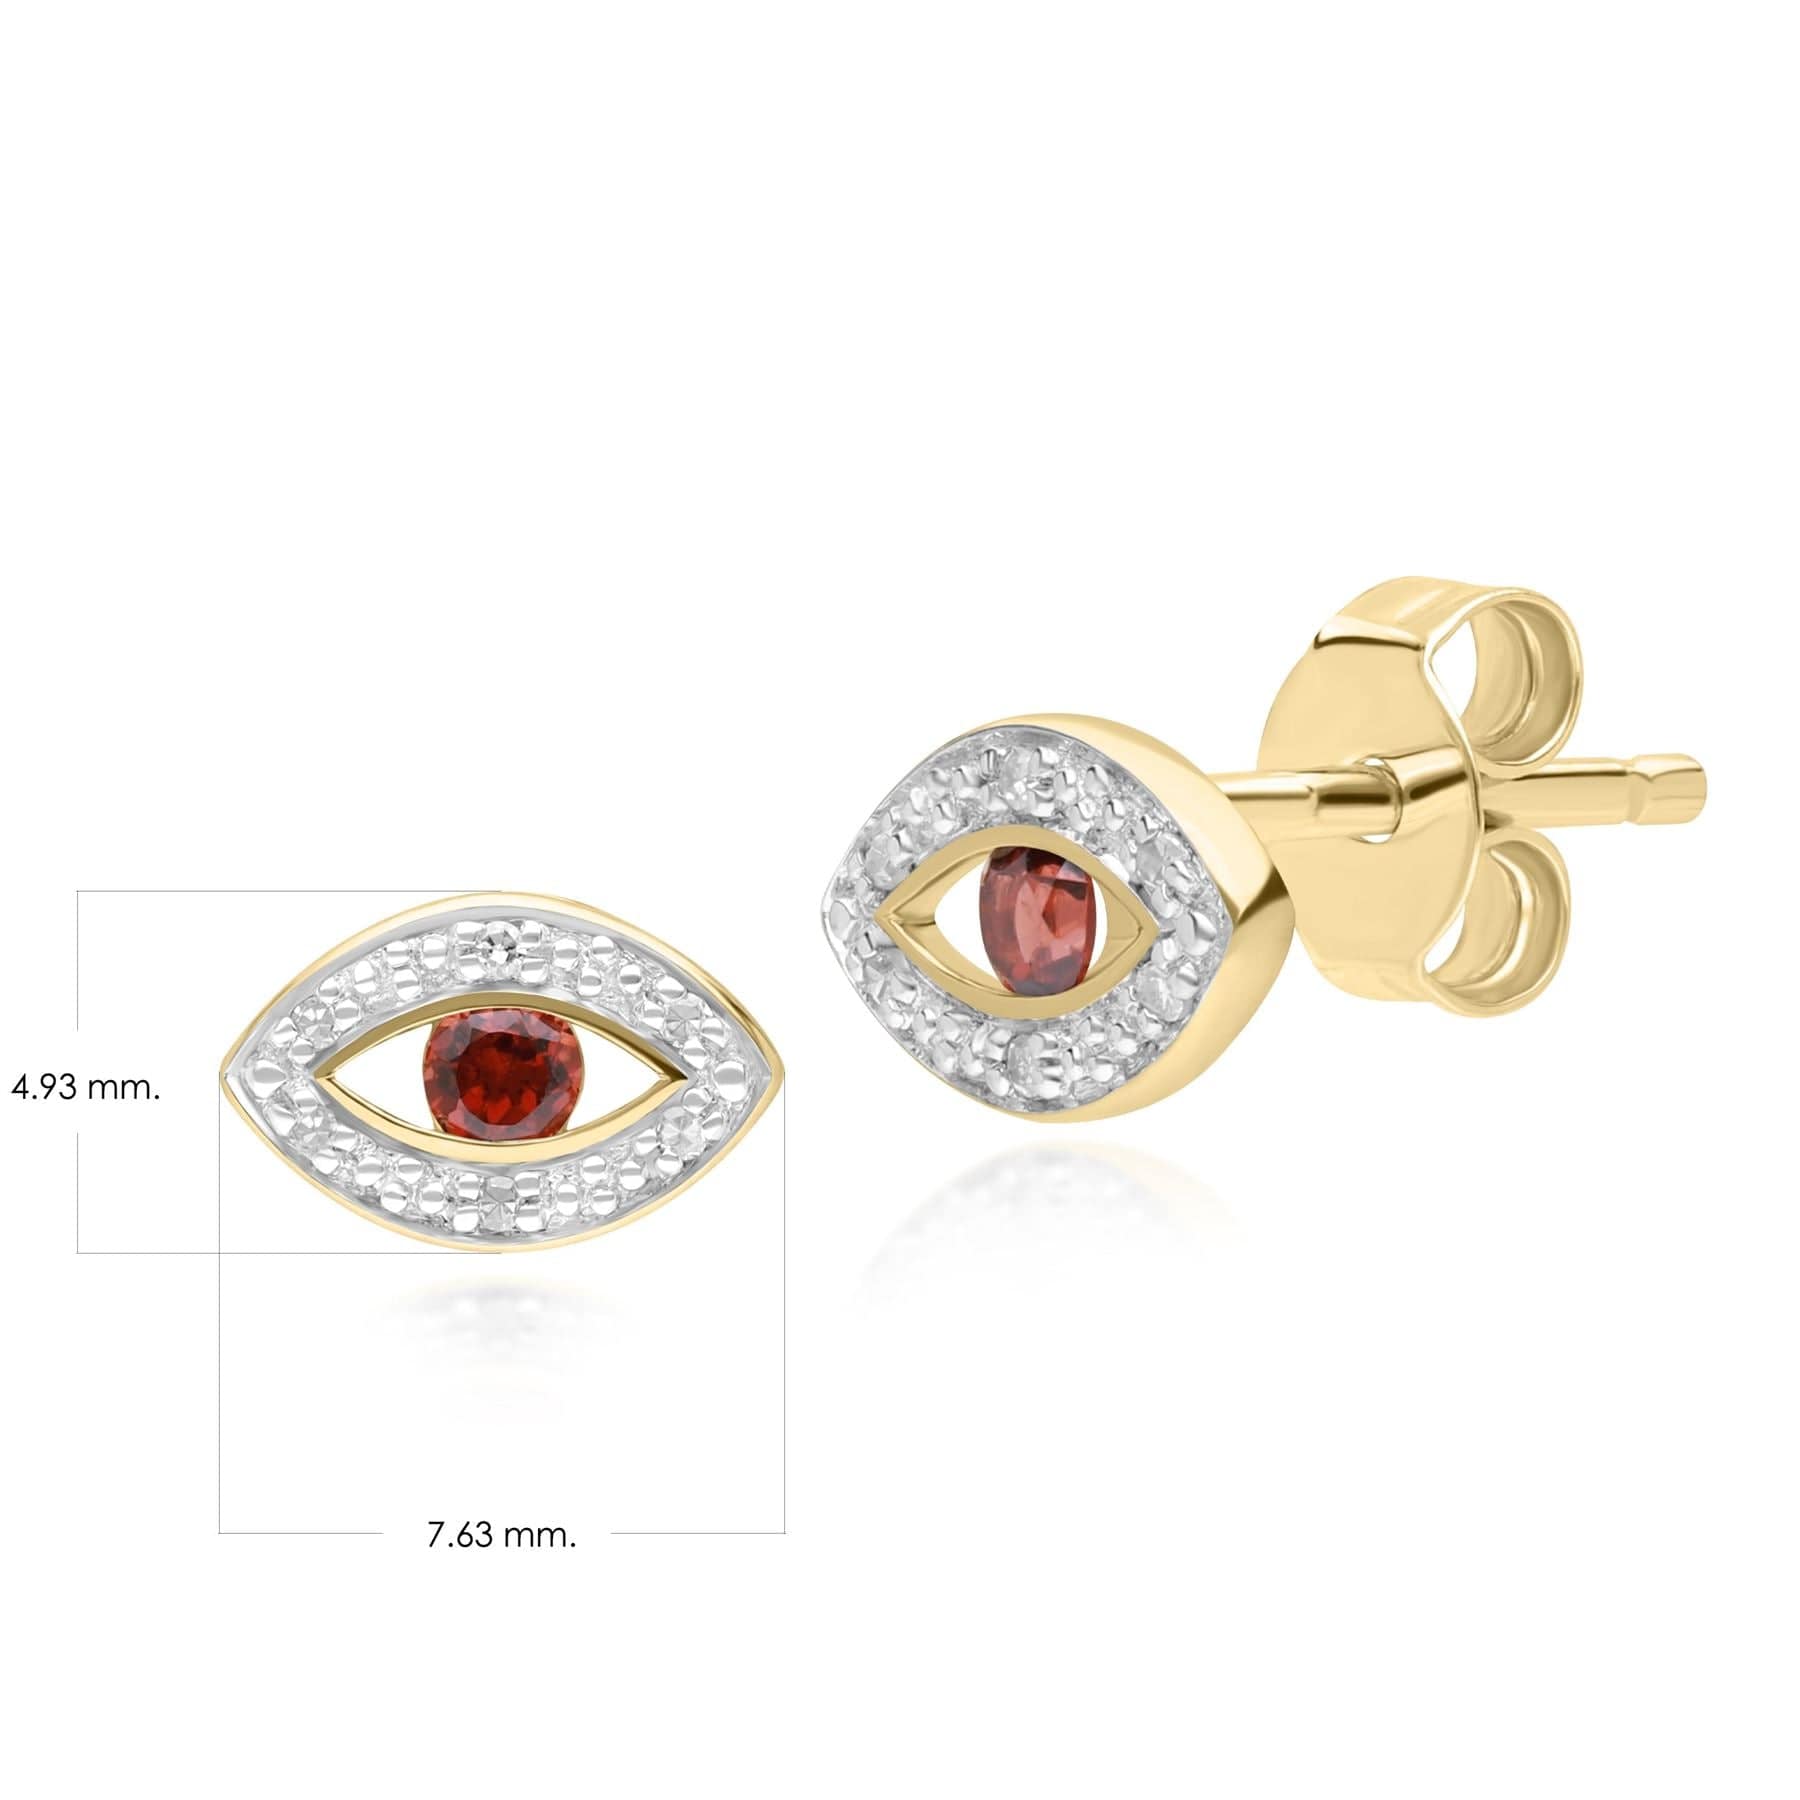 ECFEW™ Dainty Evil Eye Garnet & Diamond Stud Earrings in 9ct Yellow Gold - Gemondo